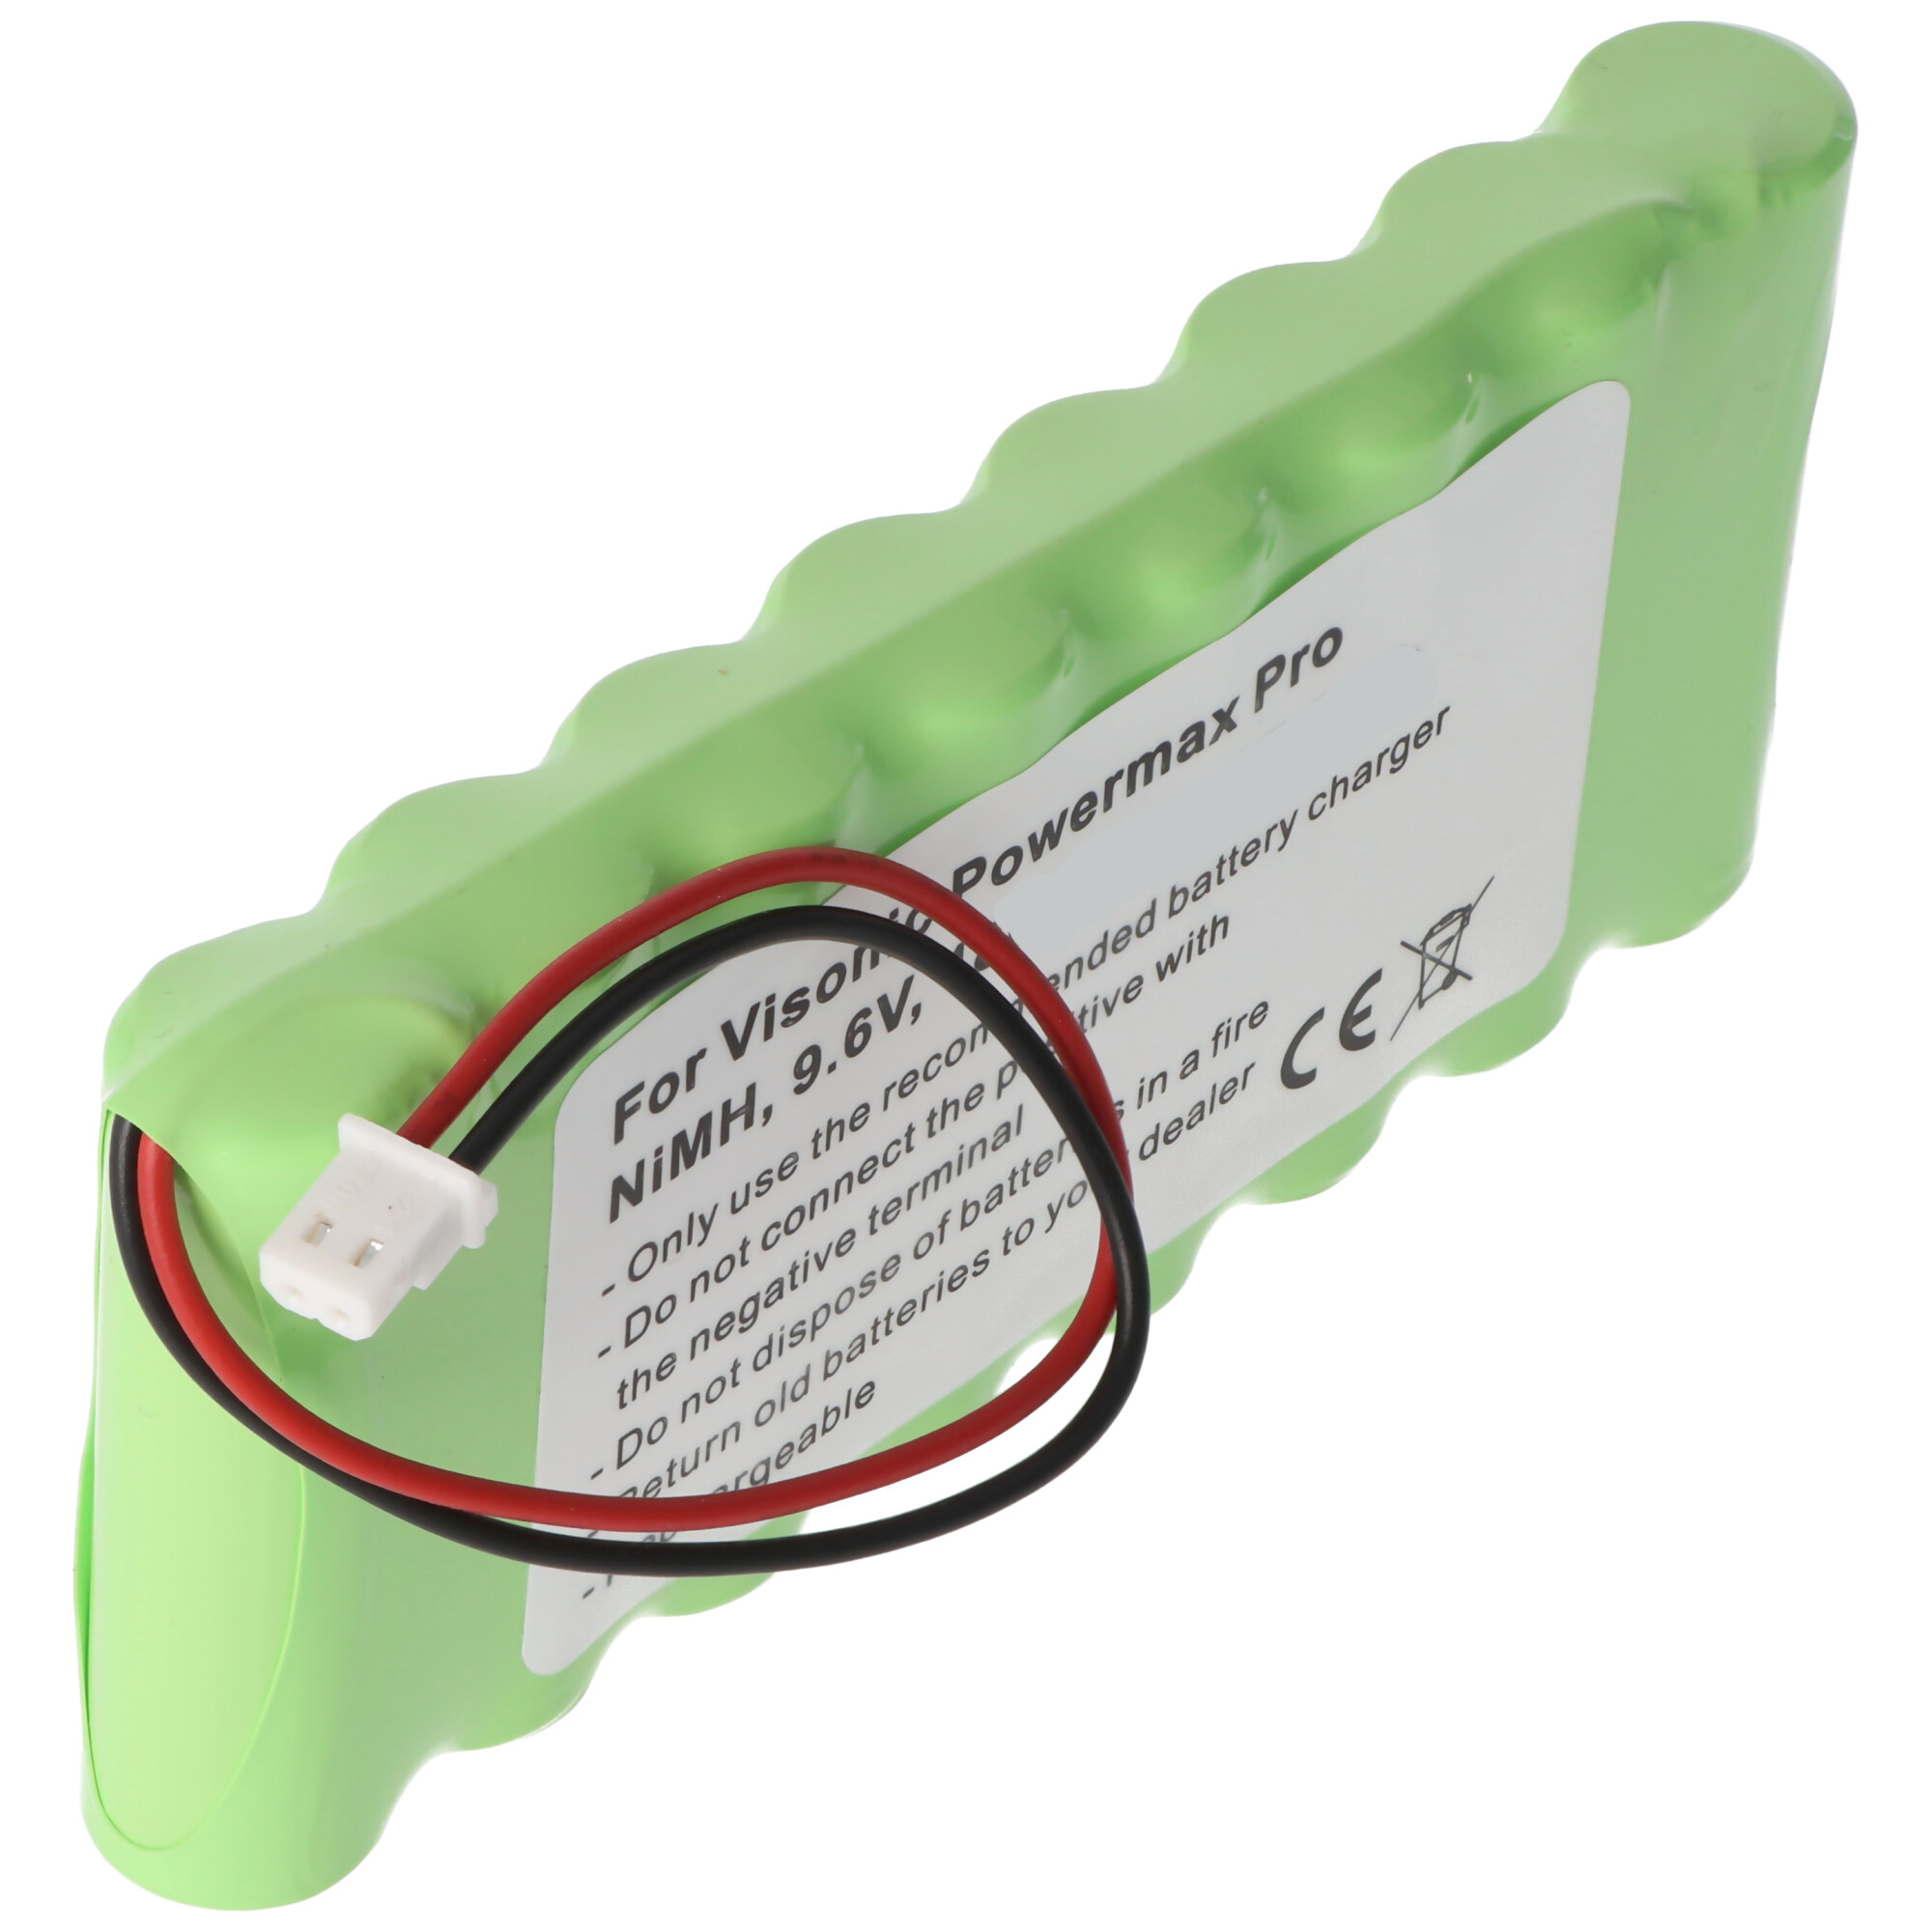 Visonic Powermax Pro/Complete Alarm Battery Pack 9.6V NiMH 0-9912-G 103-300672 